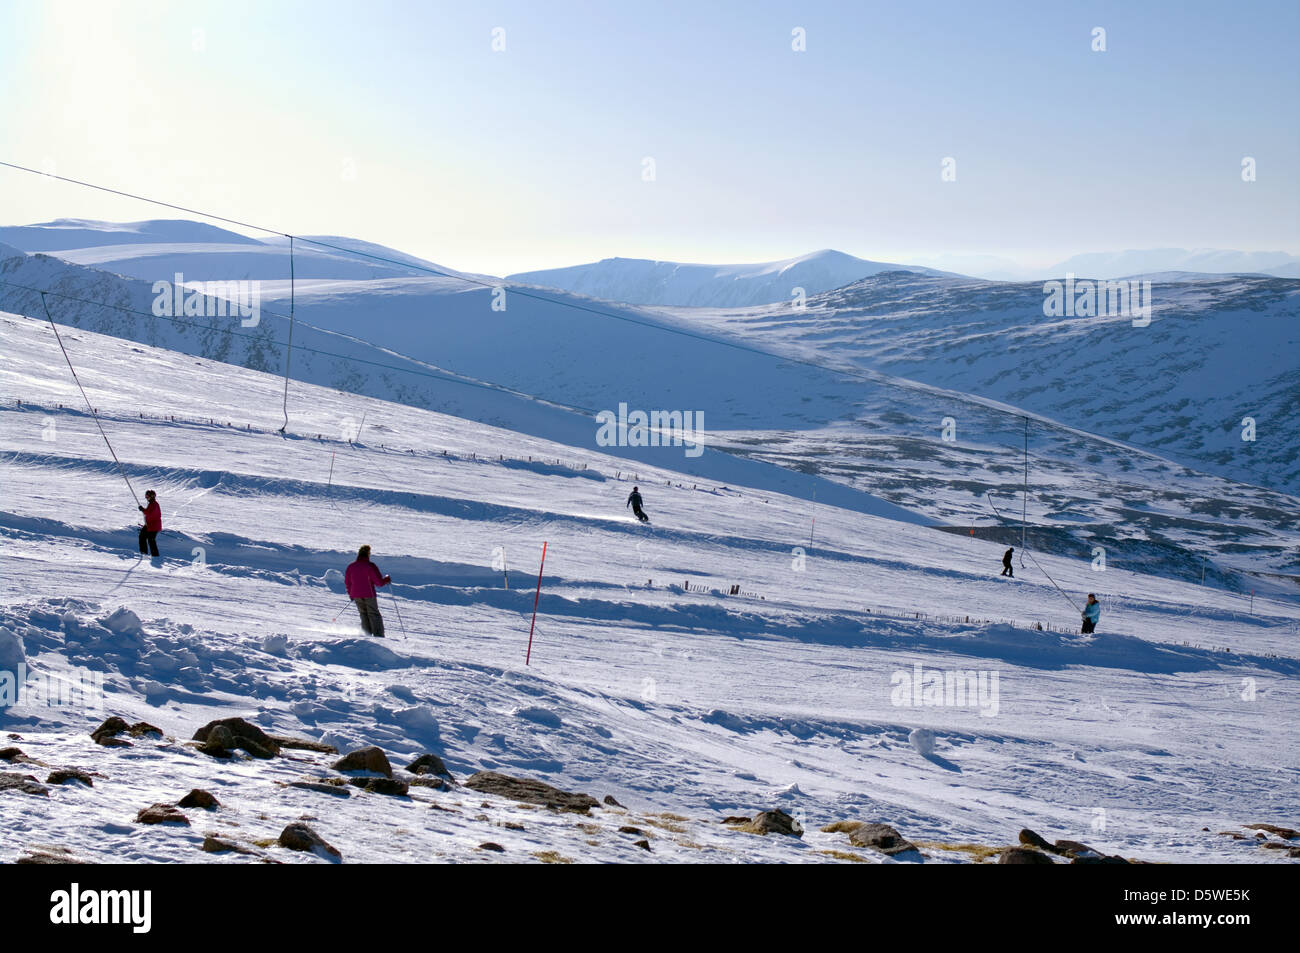 Le skieur et snowboarder sur les remorques et fonctionne, vu de l'affichage des lagopèdes terrasse, centre de ski de montagne de Cairngorm Aviemore Ecosse Banque D'Images